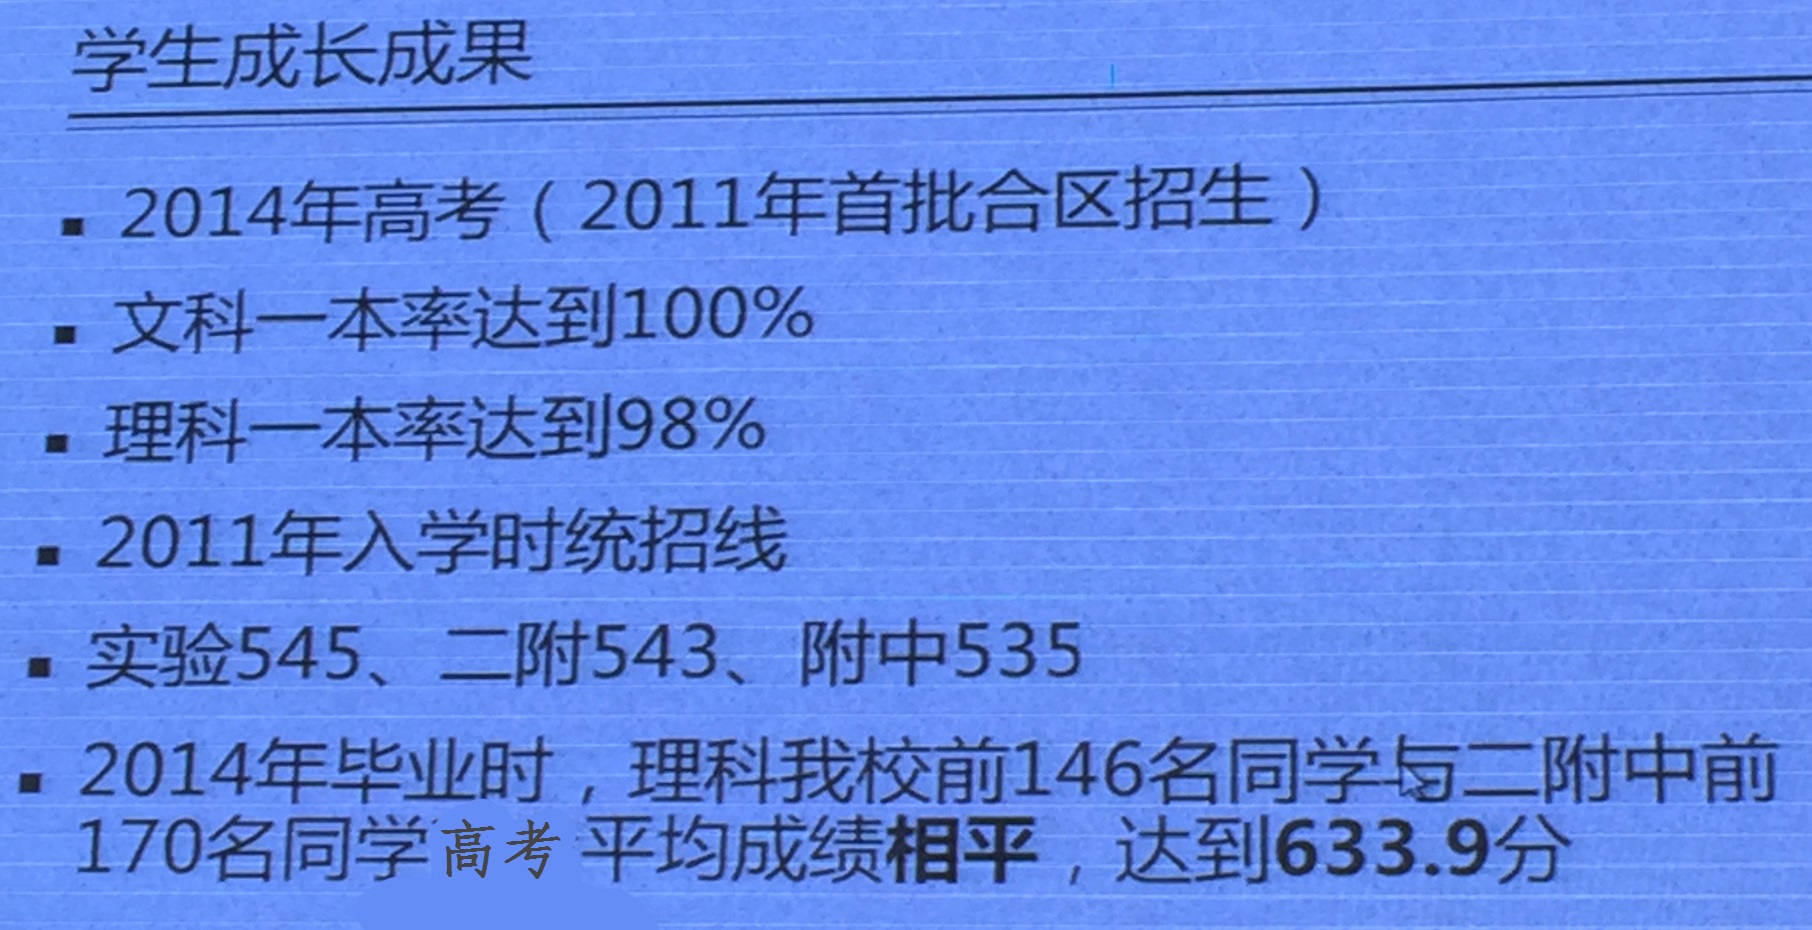 北京师范大学附属中学2014年高考成绩及录取情况1